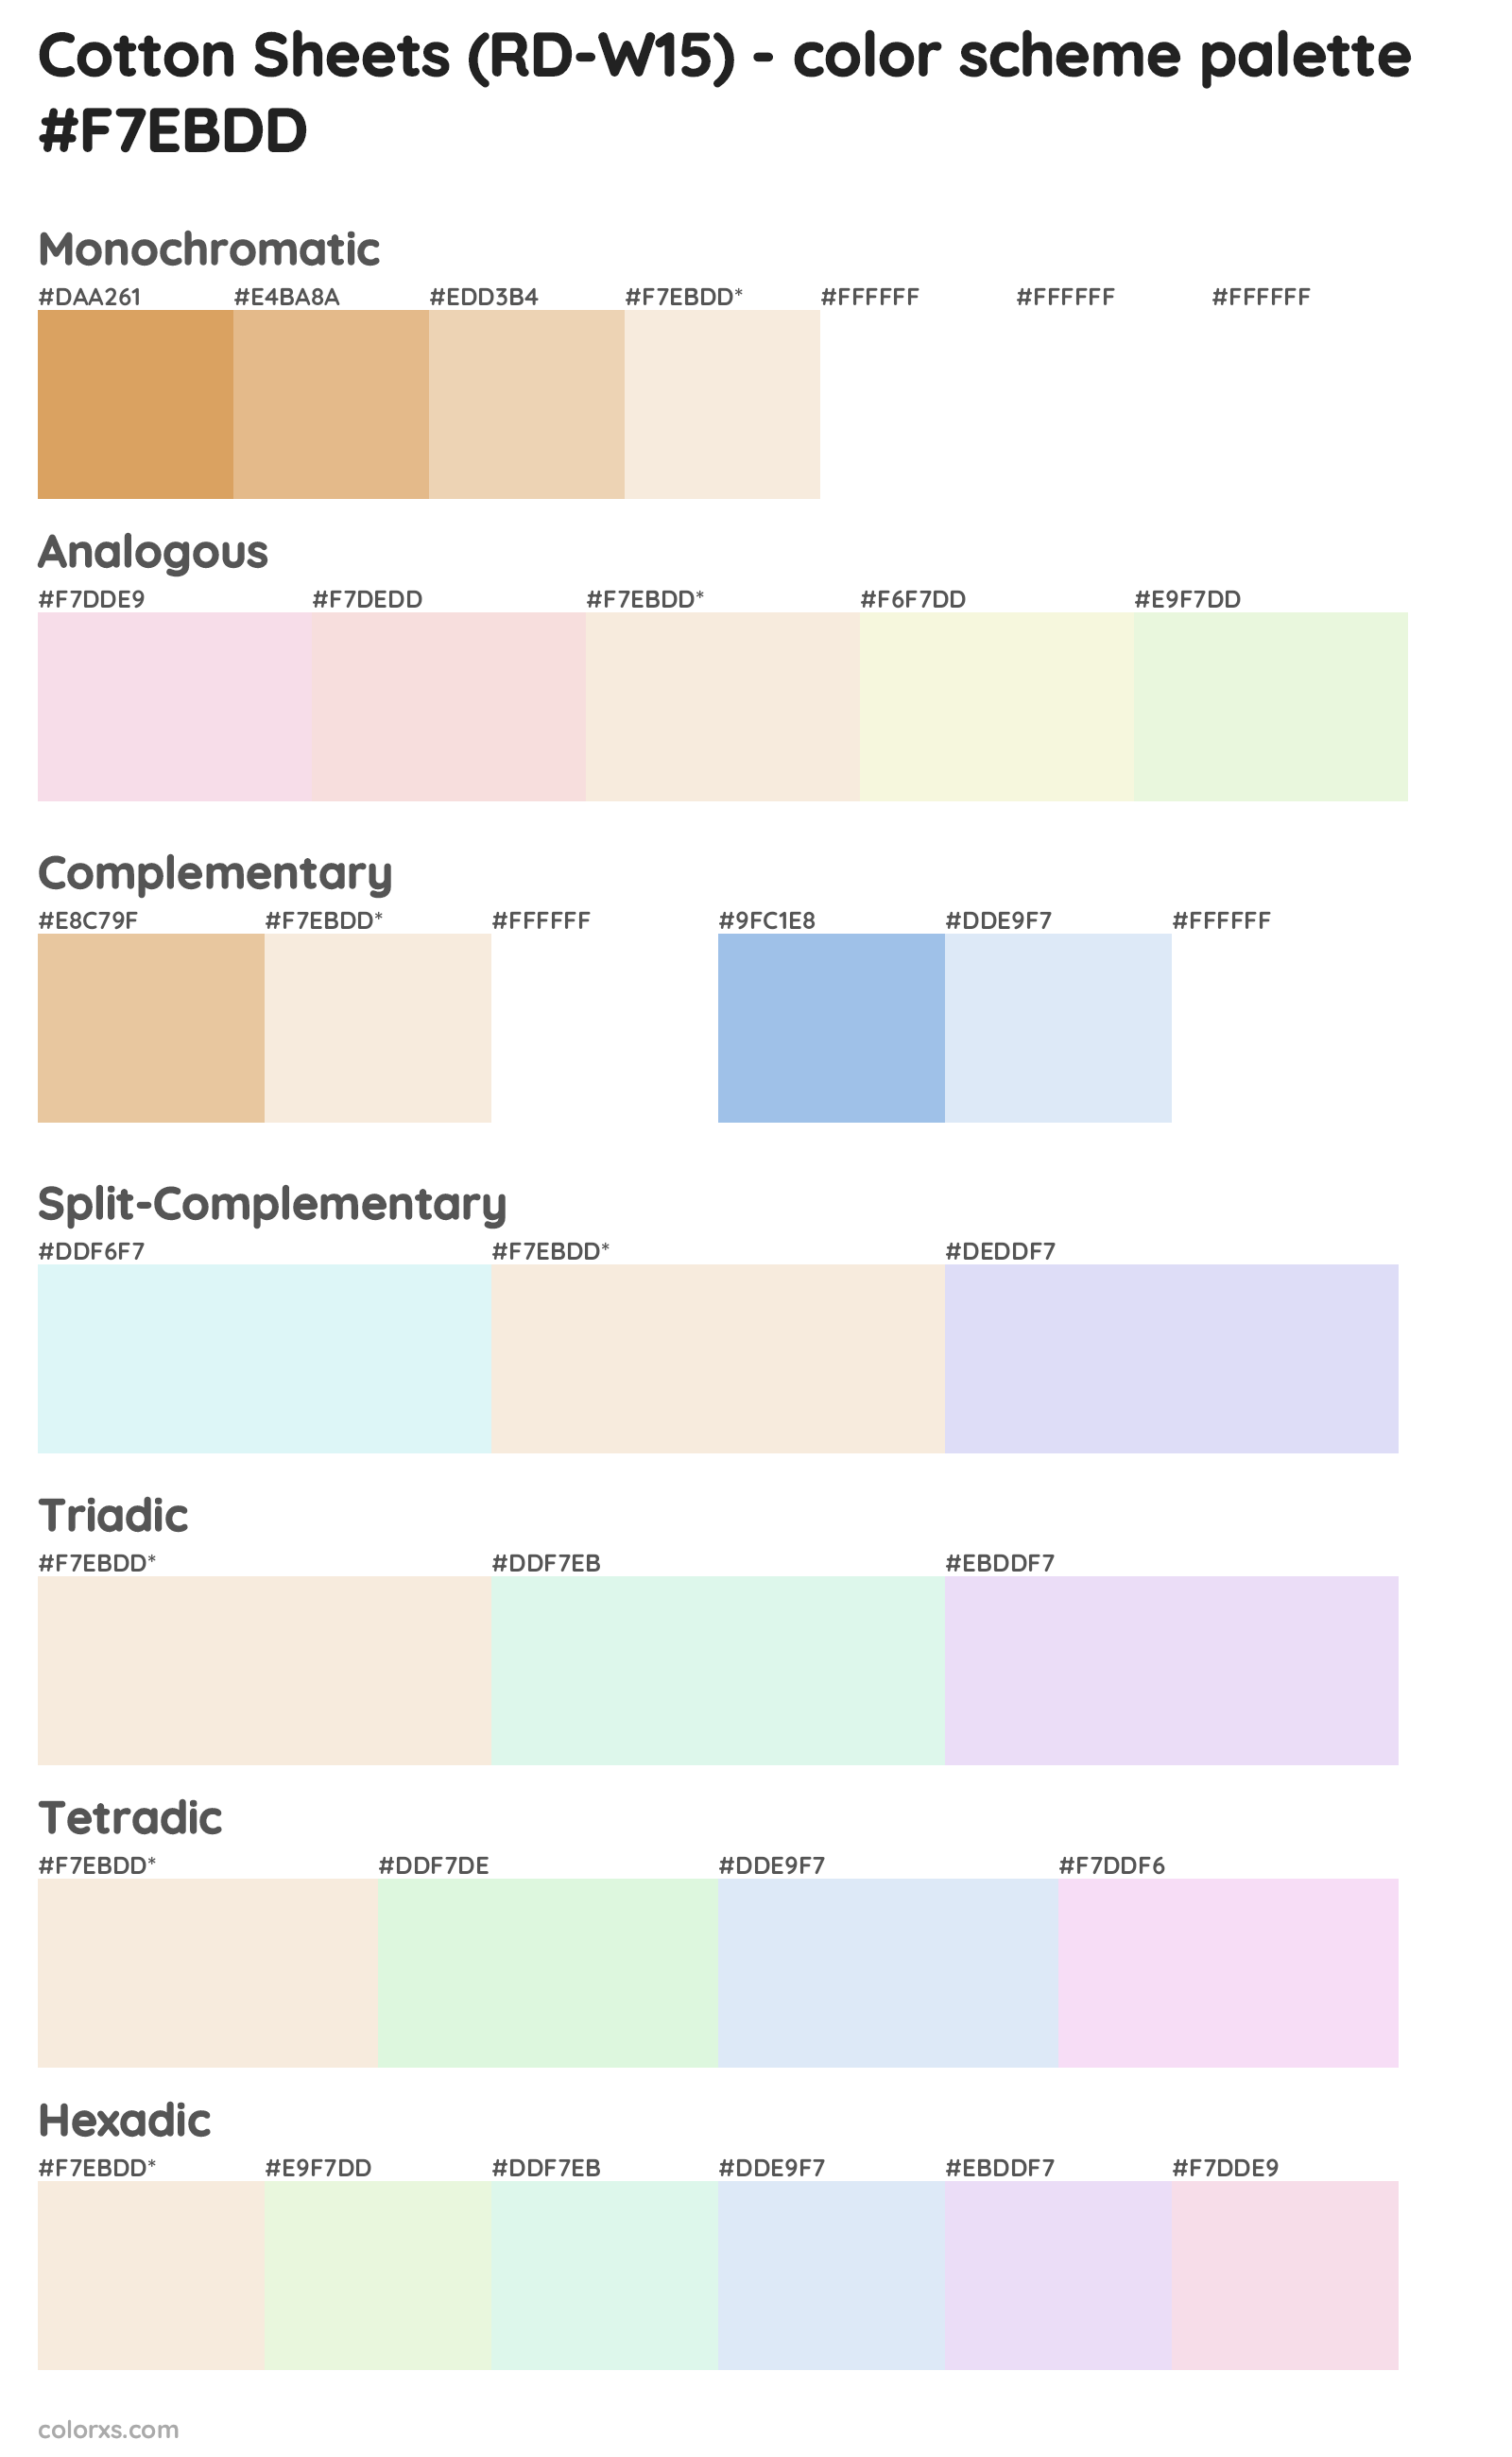 Cotton Sheets (RD-W15) Color Scheme Palettes